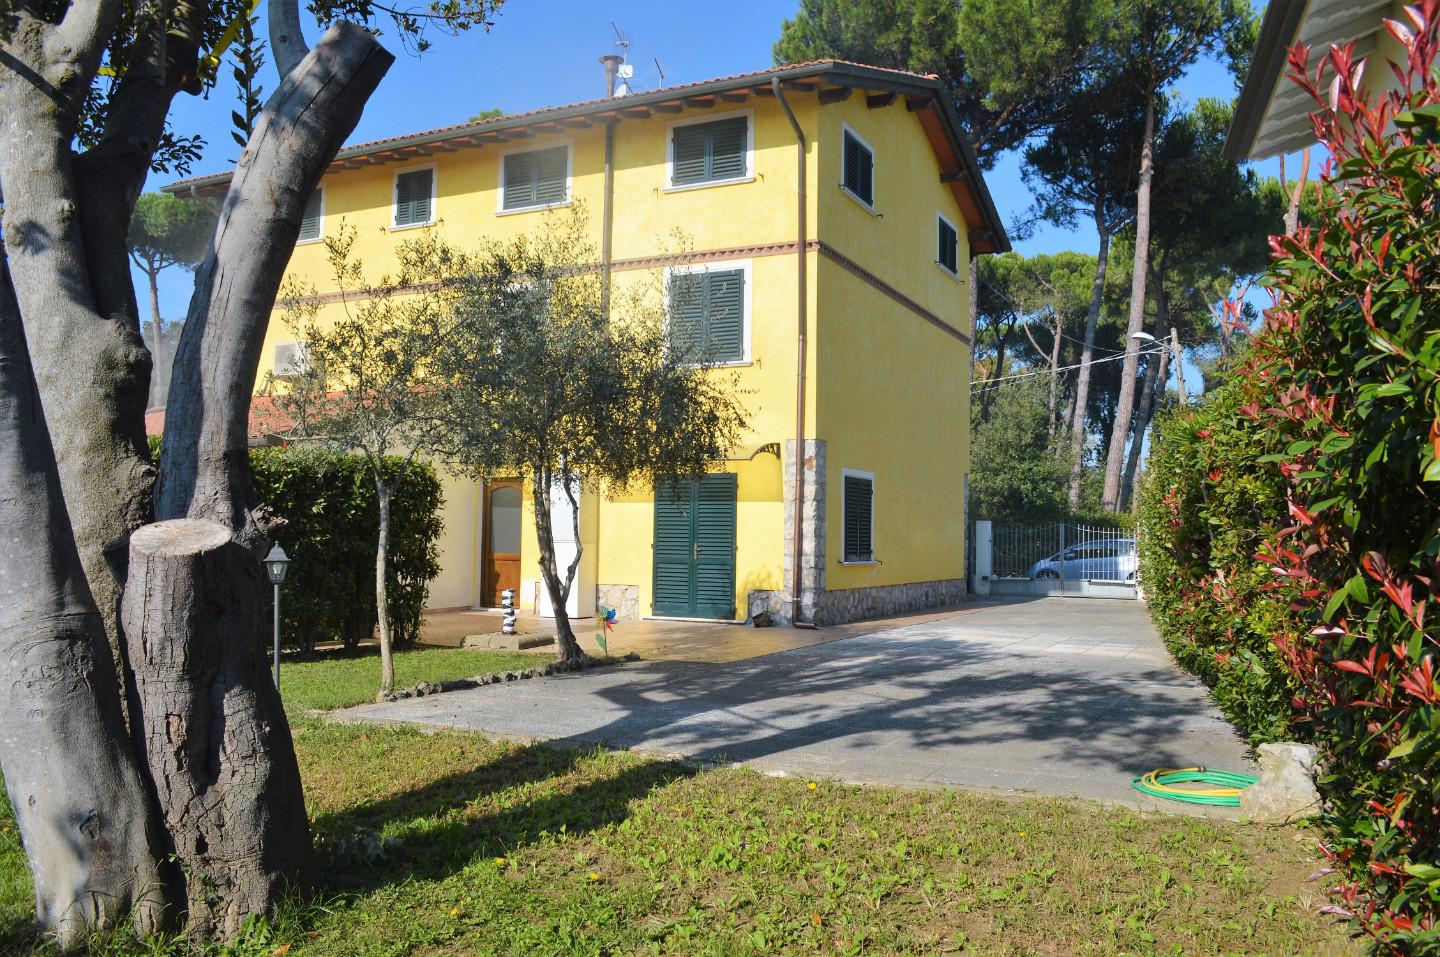 Villa Bifamiliare con giardino, Pietrasanta marina di